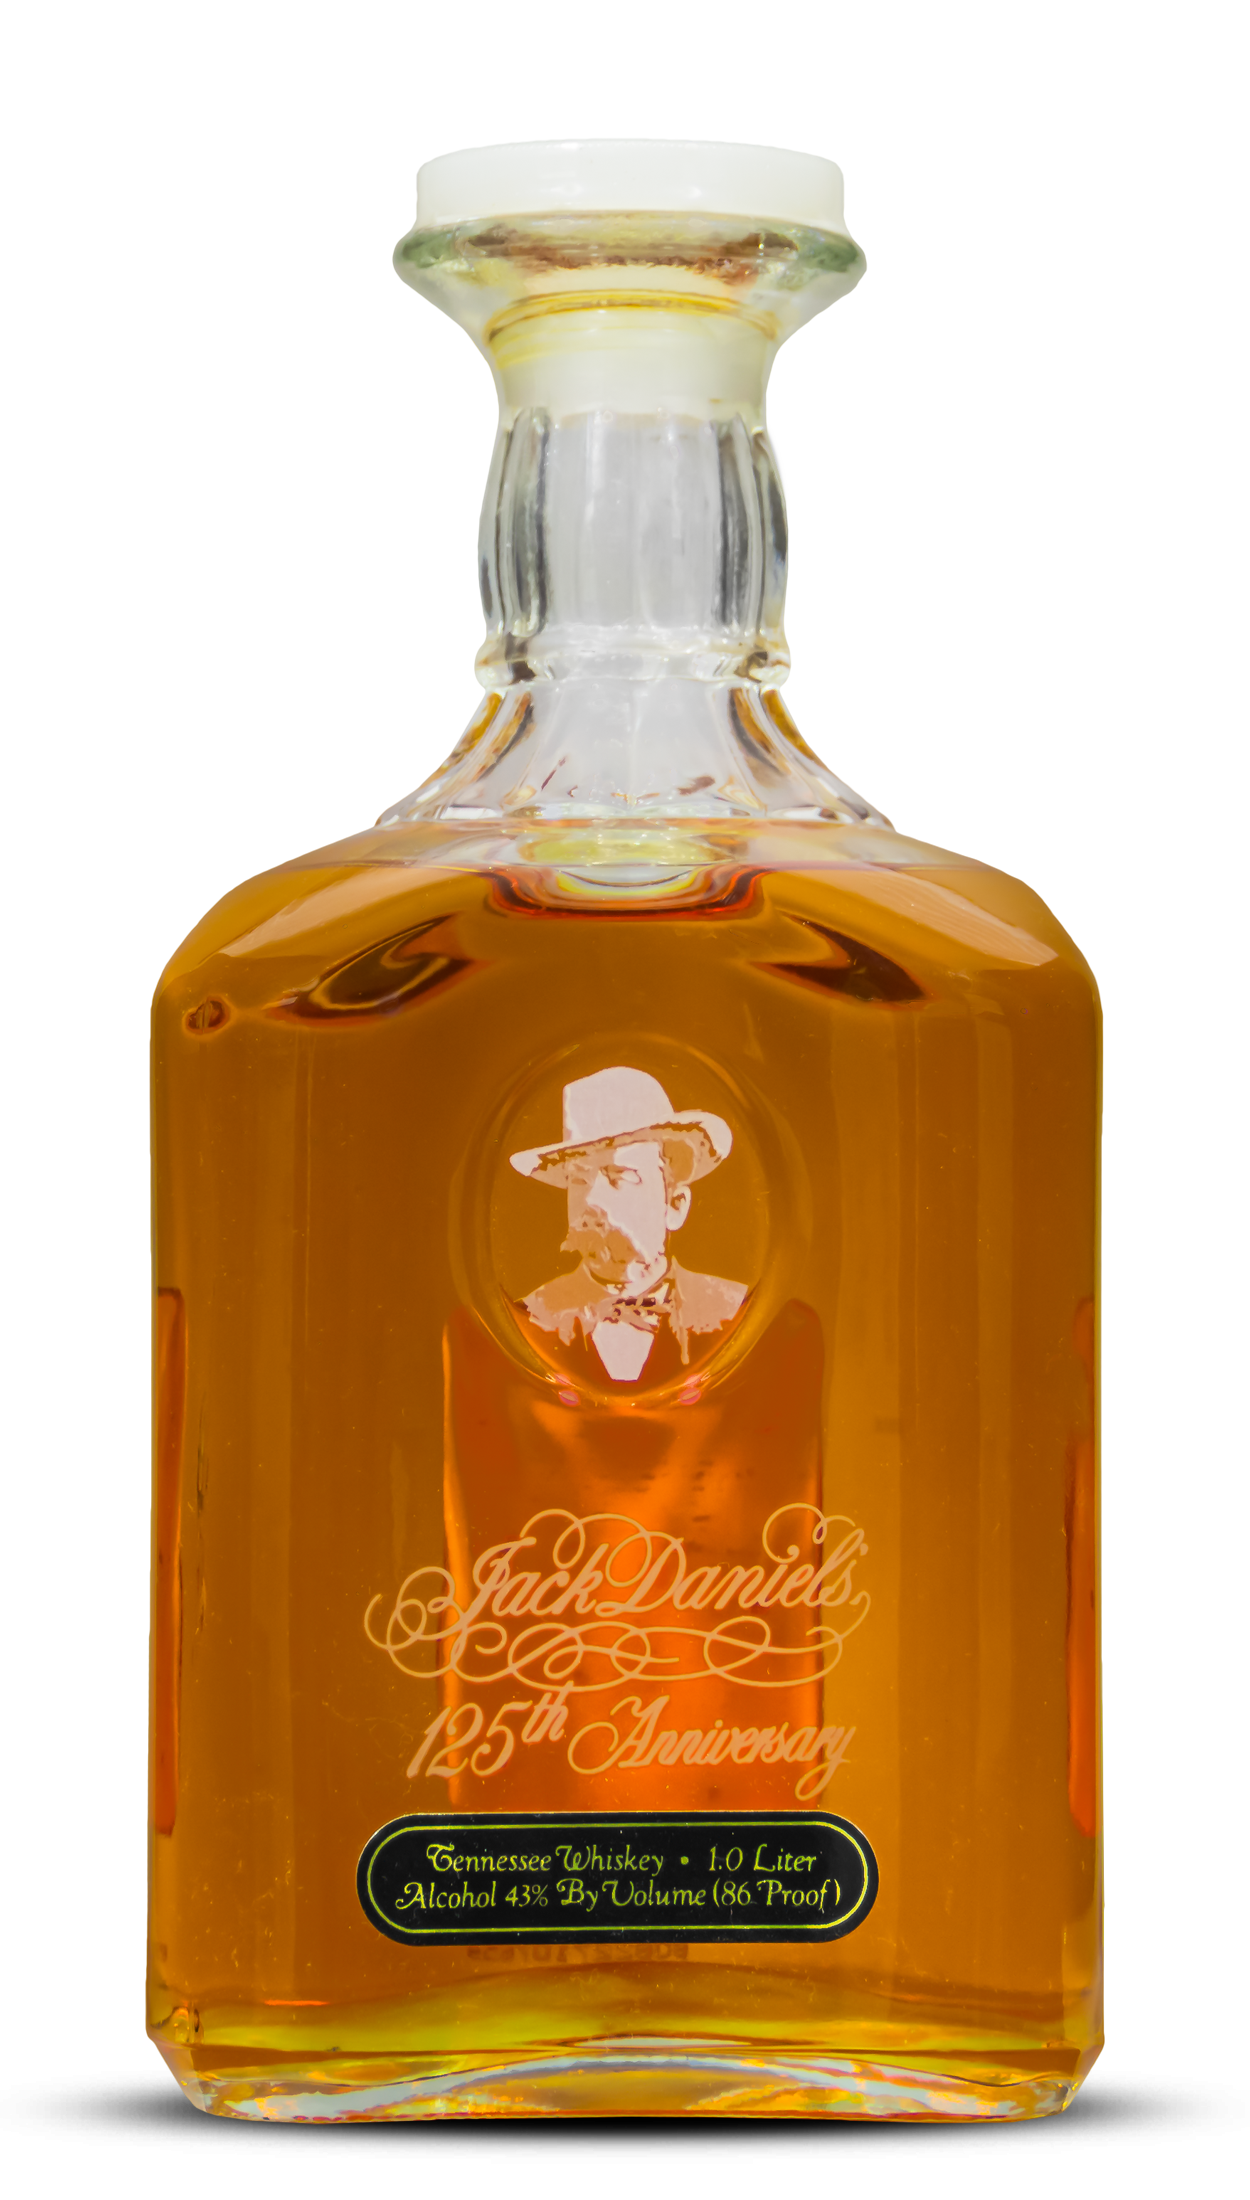 125th Anniversary Bottle | Jack Daniels Bottles